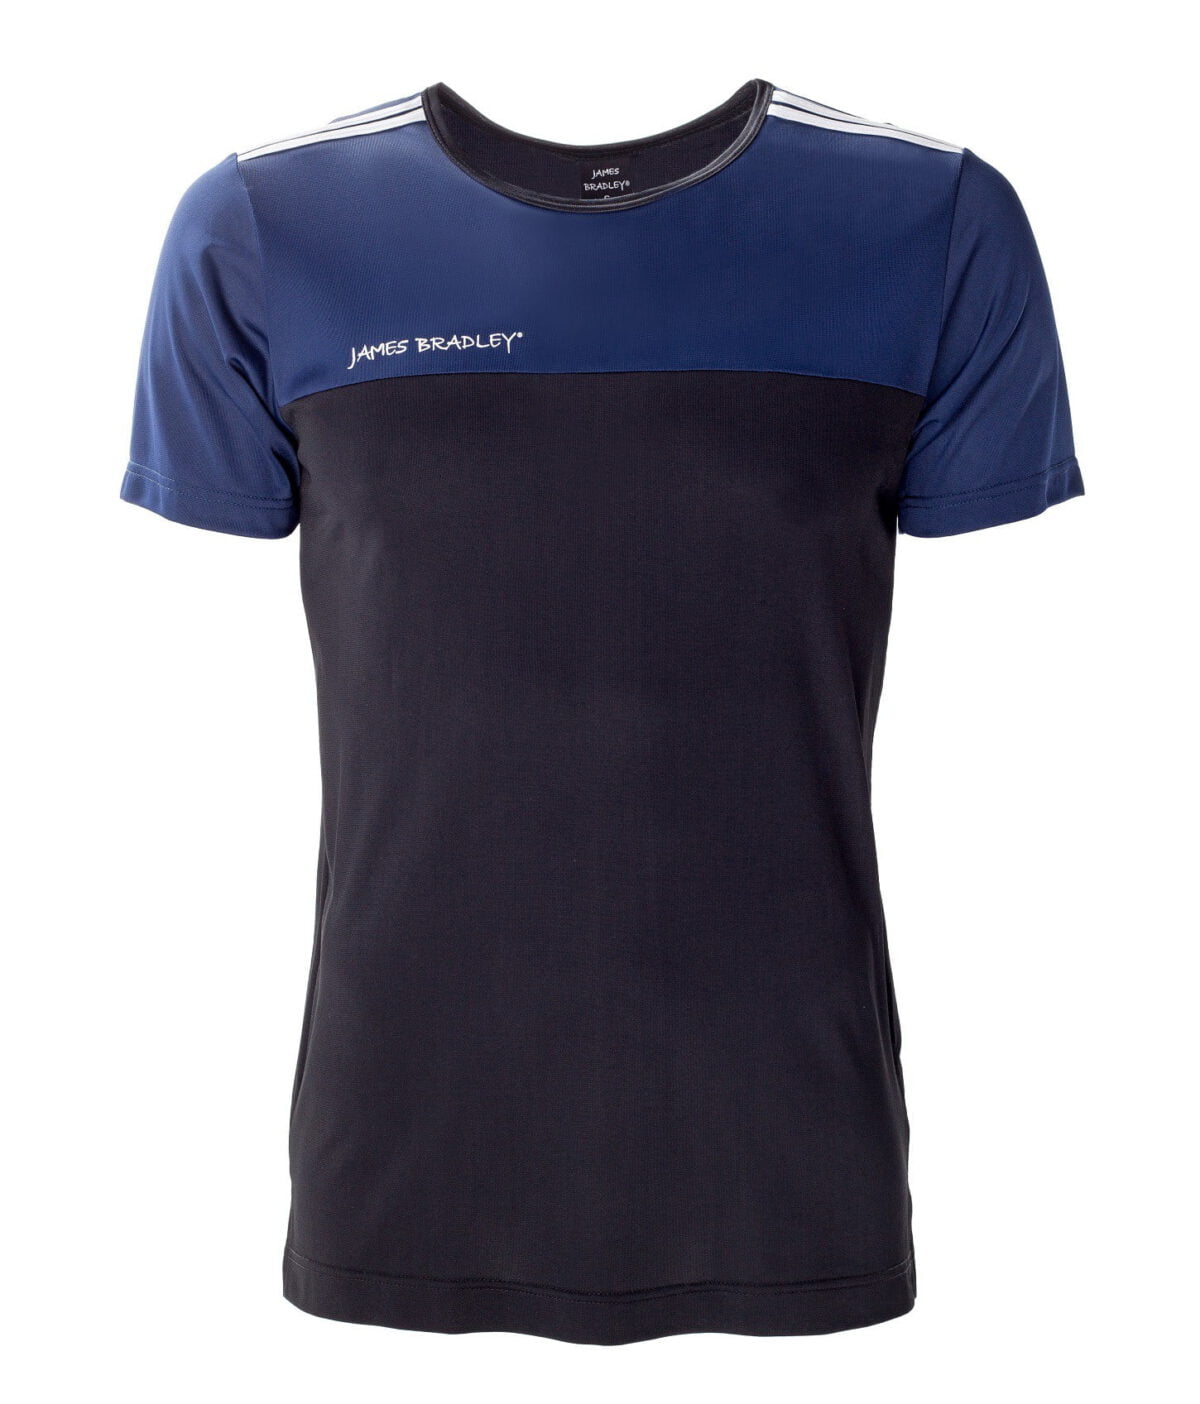 James Bradley-Sportowy T-shirt męski Fit Boy termoaktywny-czarny   granatowy